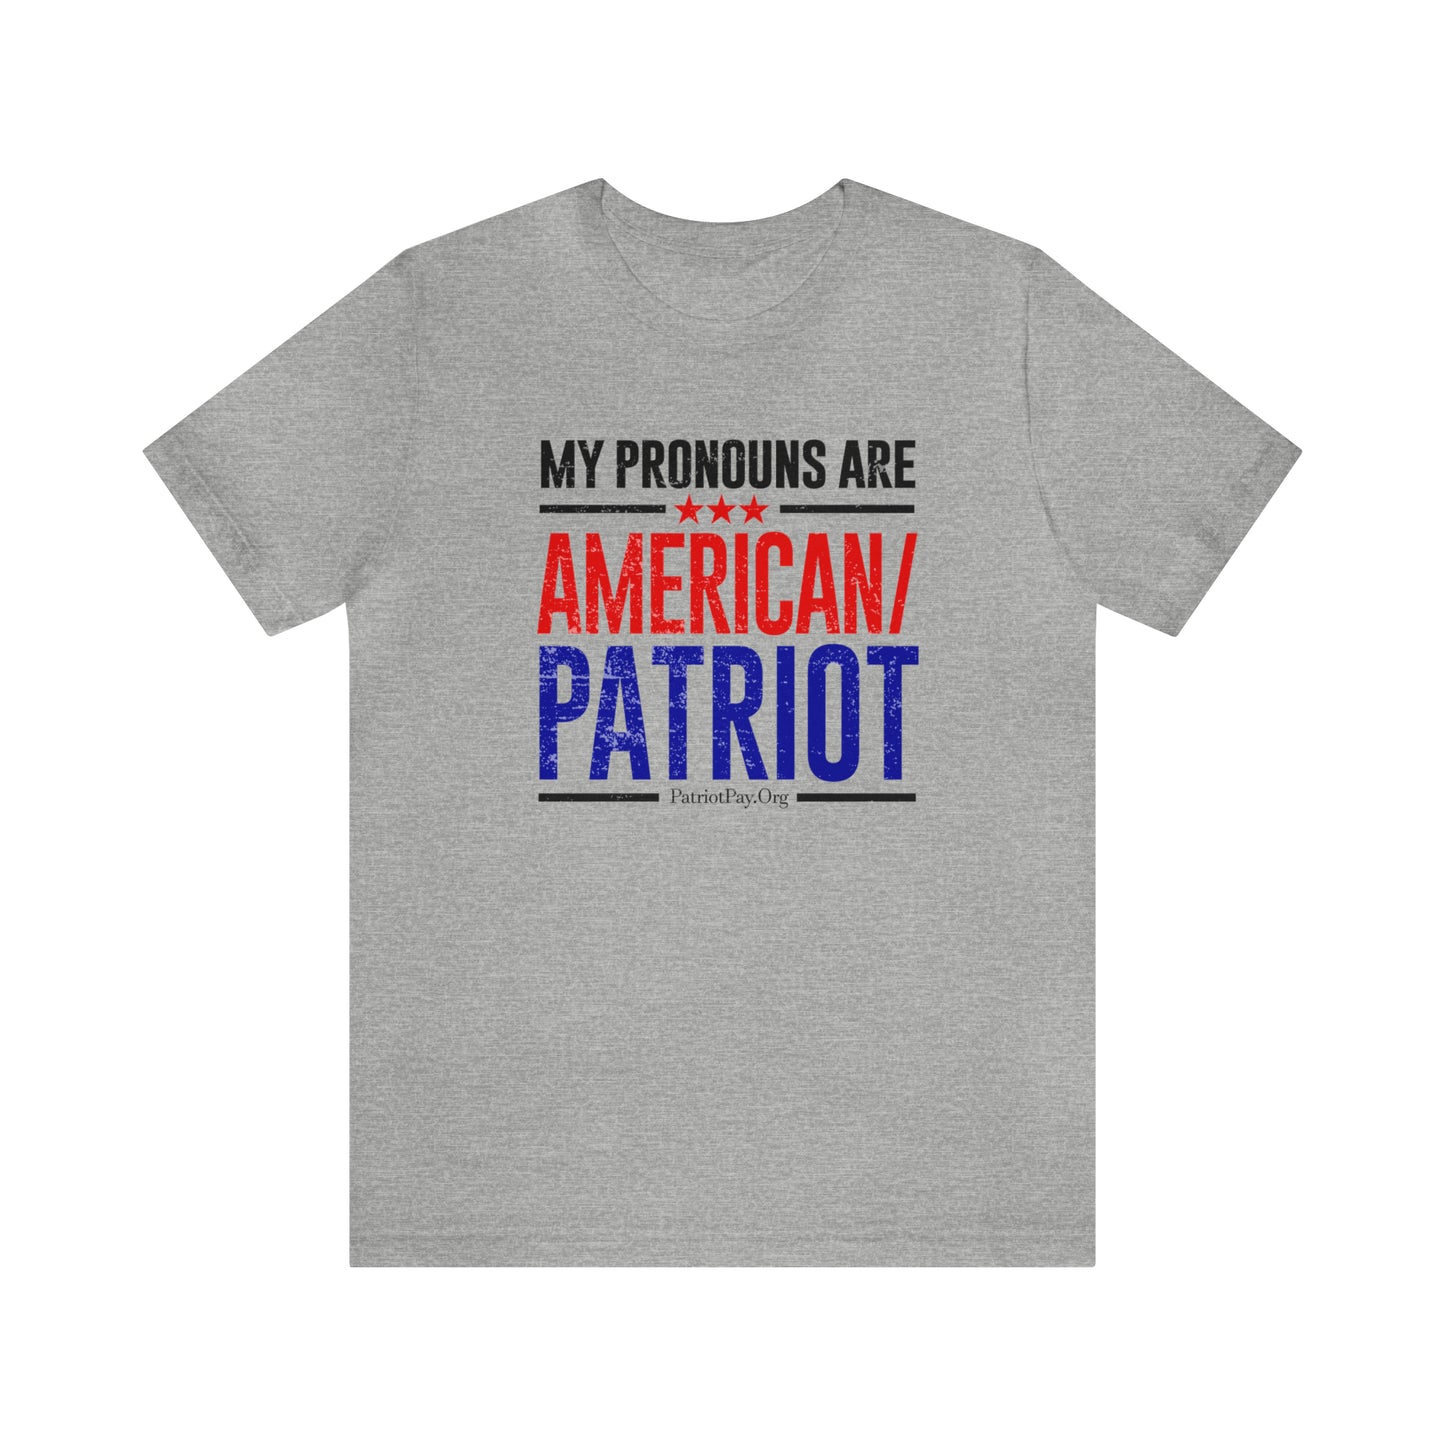 American Patriot Short Sleeve Tee